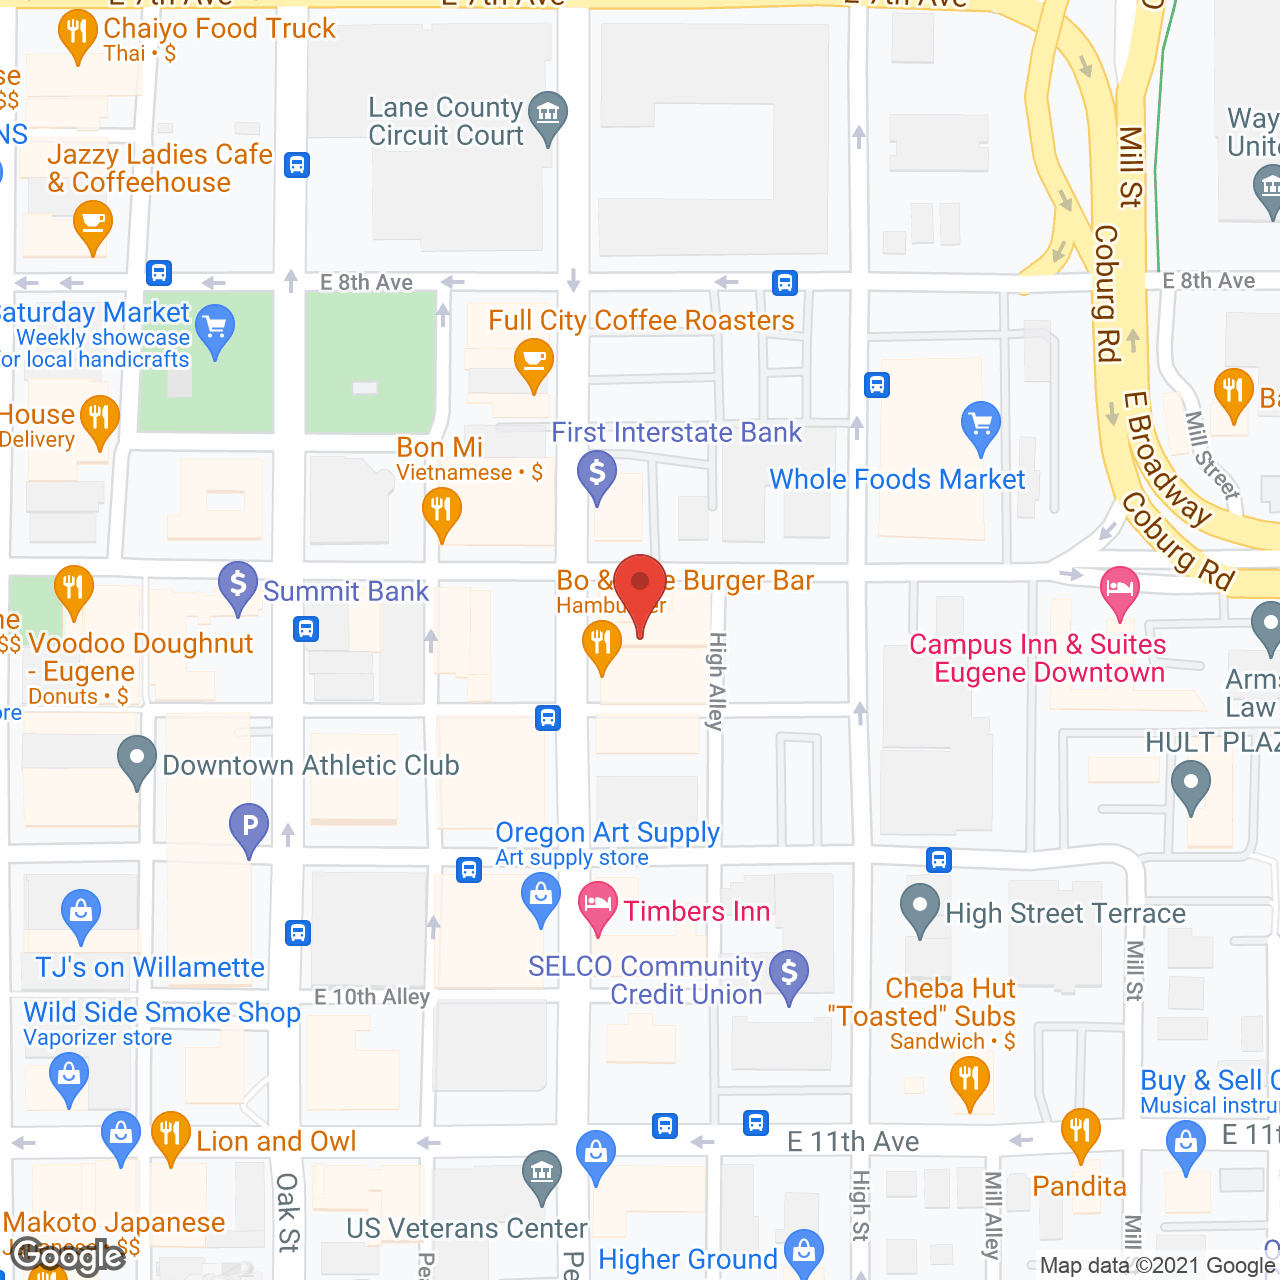 Eugene Hotel Retirement Community in google map